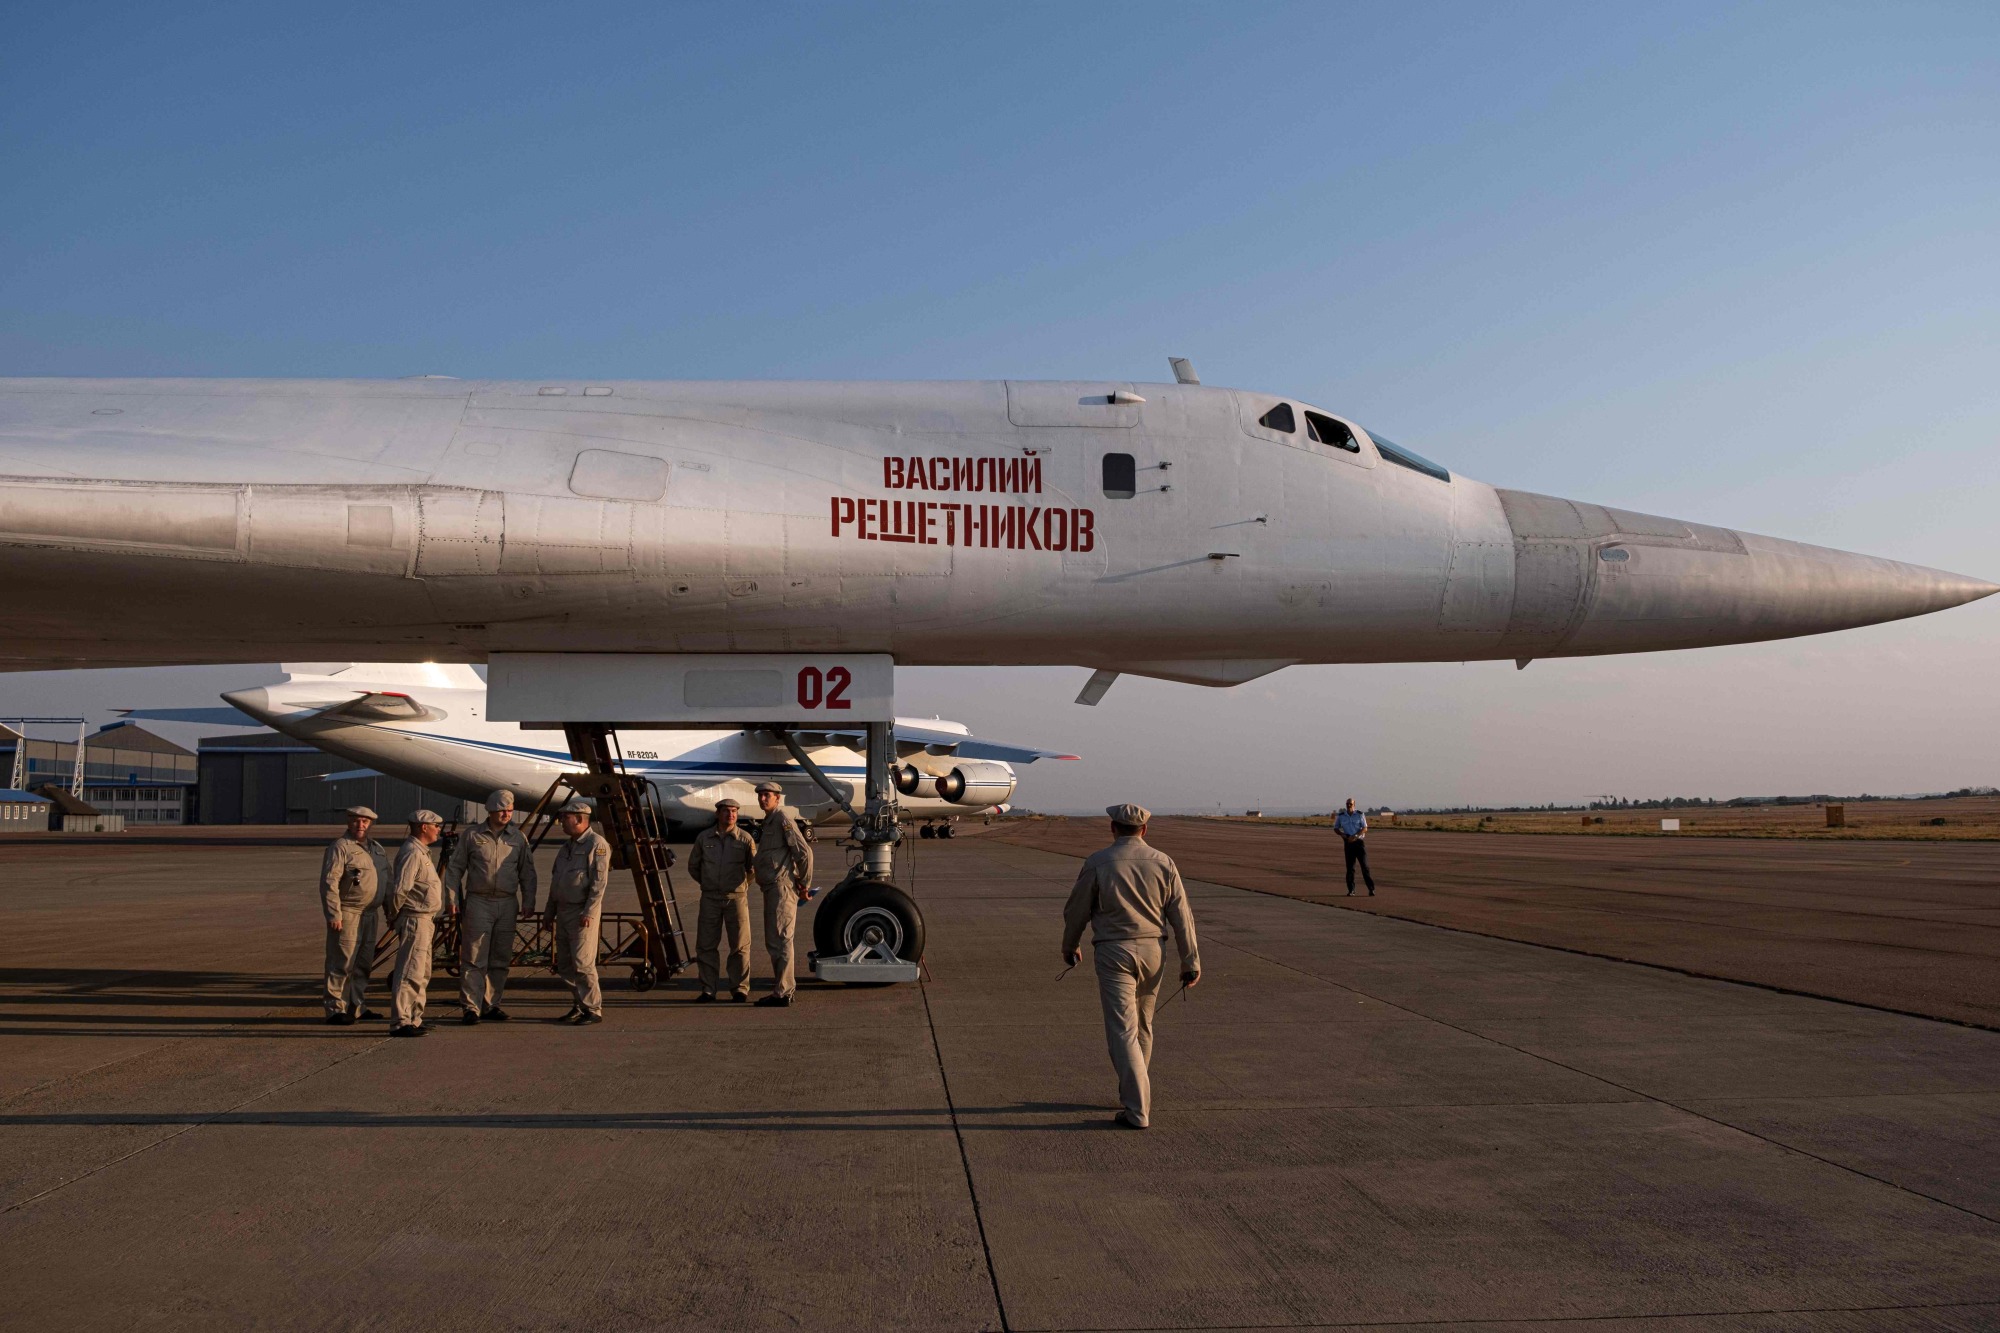 Tu-160 Blackjack Strategic Bomber